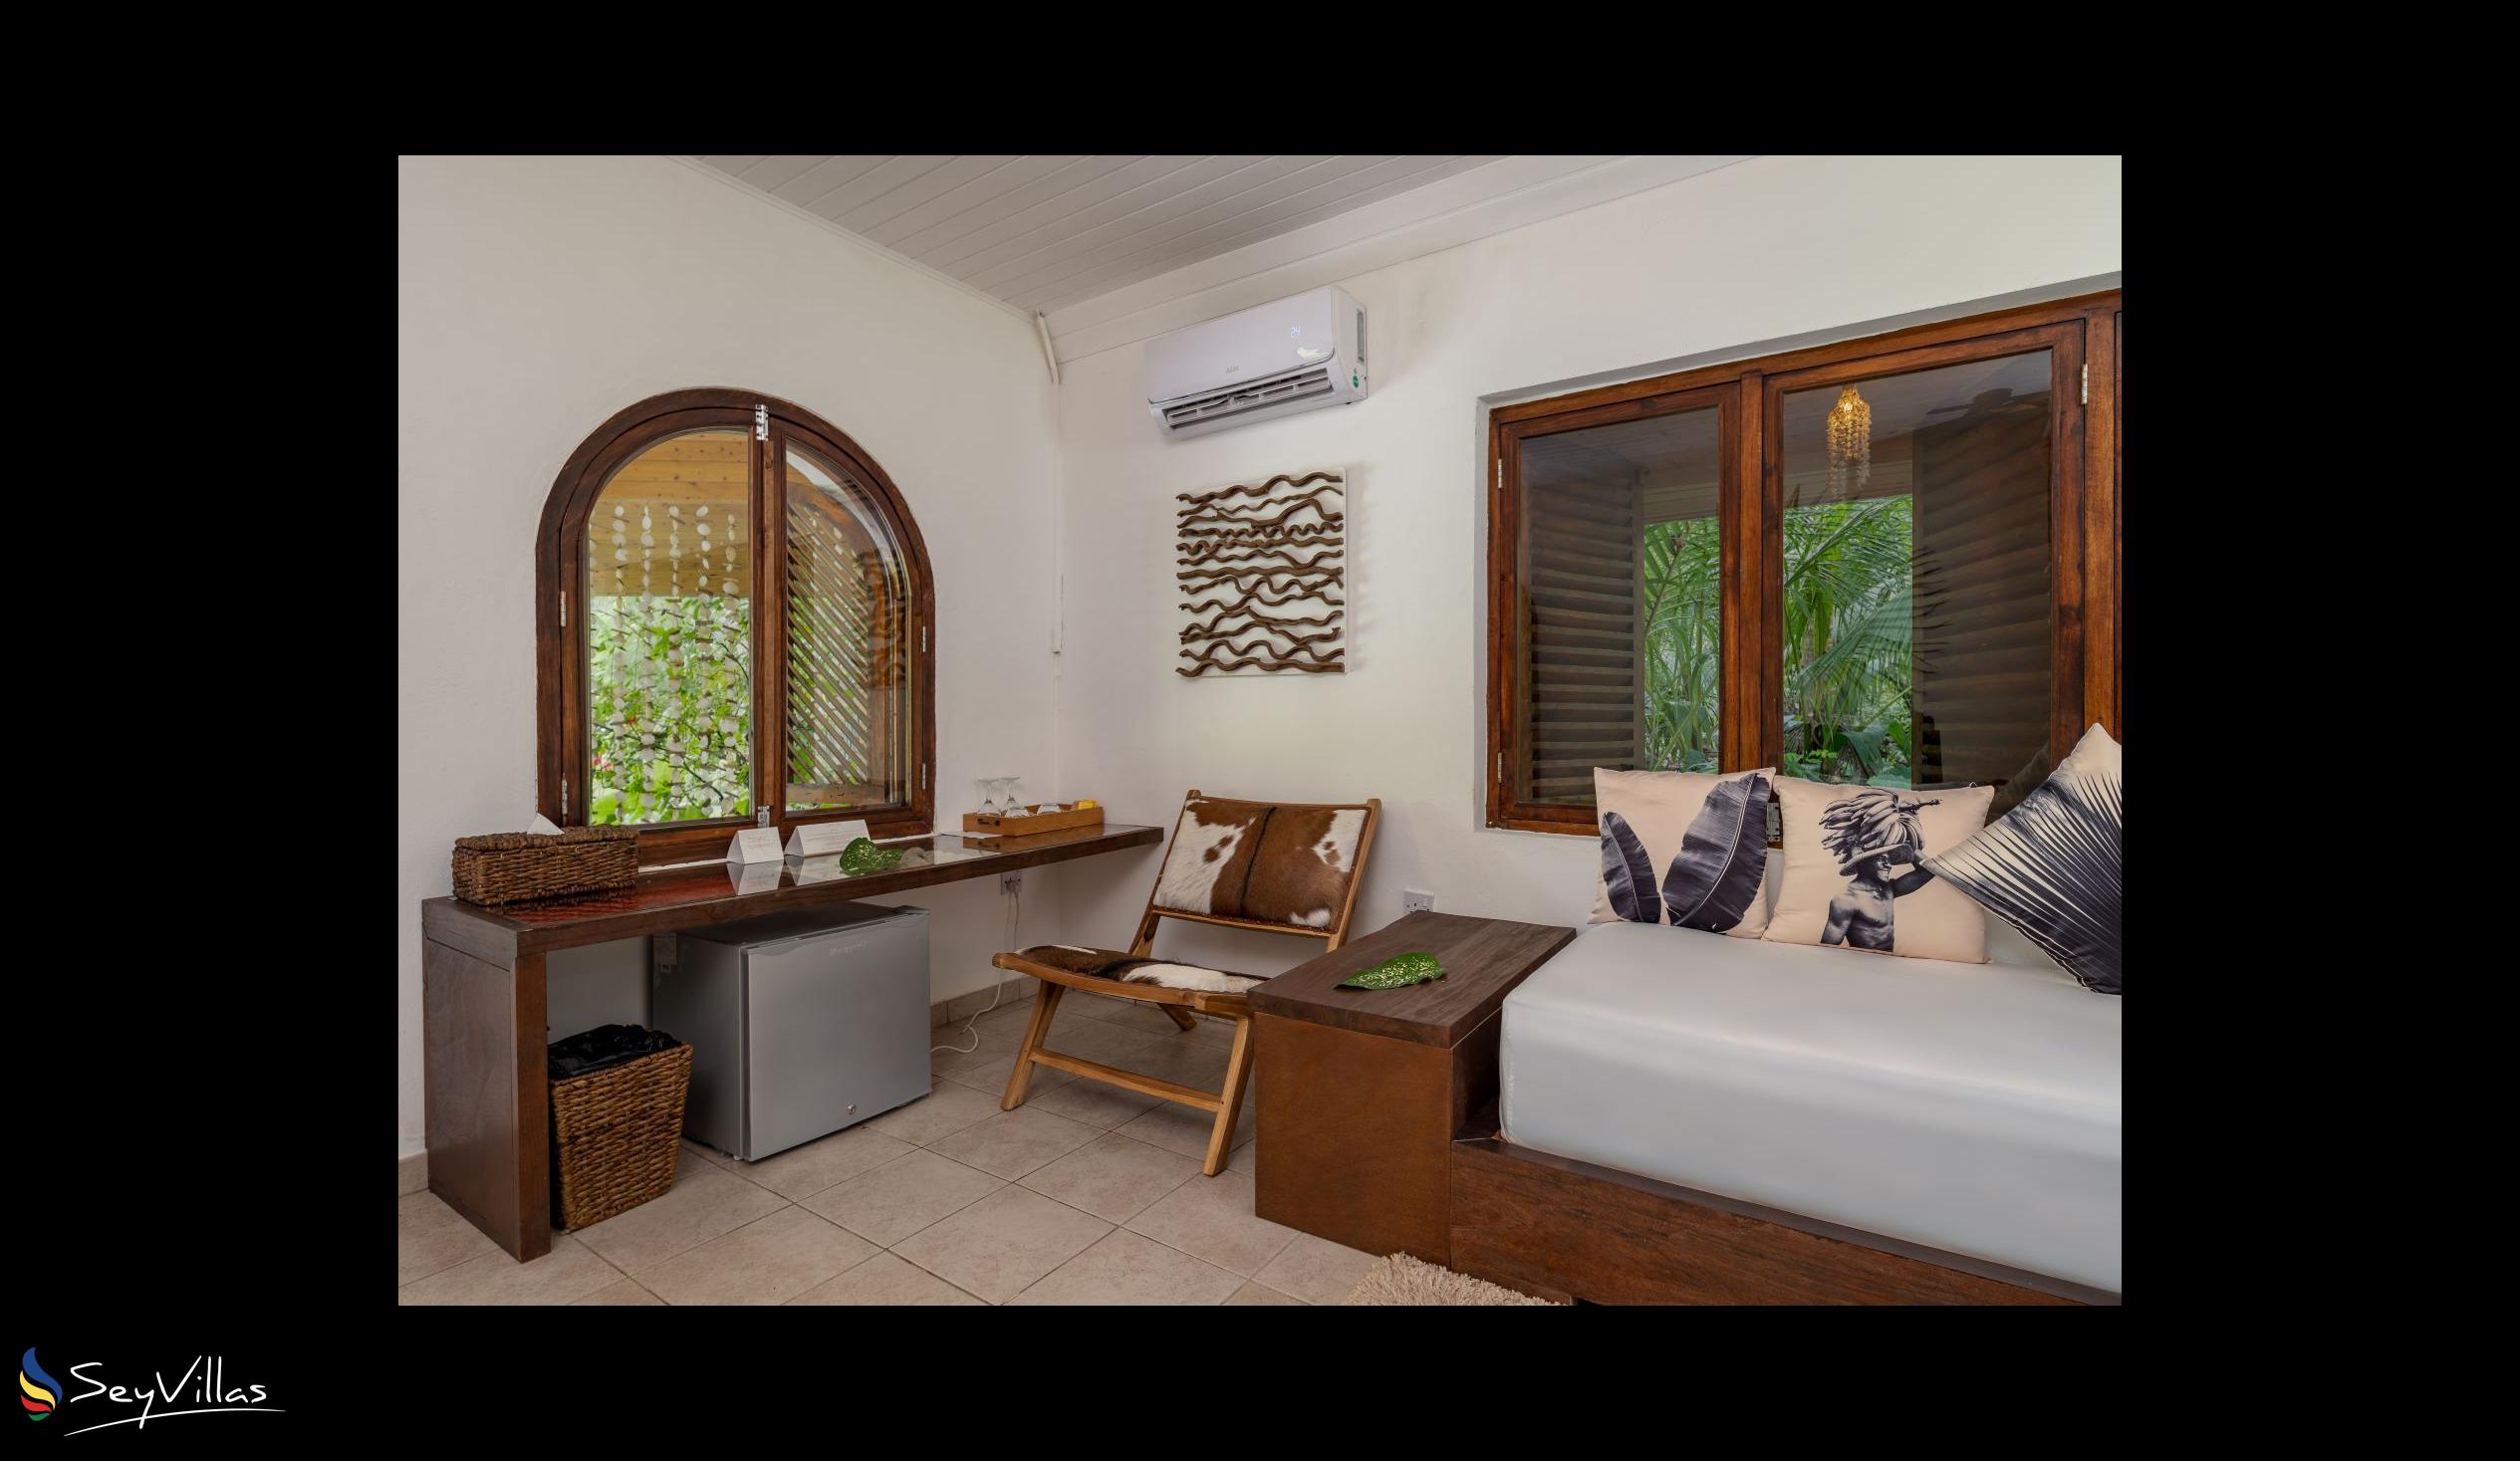 Photo 72: Bliss Hotel Praslin - Eden Garden - Family Suite - Praslin (Seychelles)